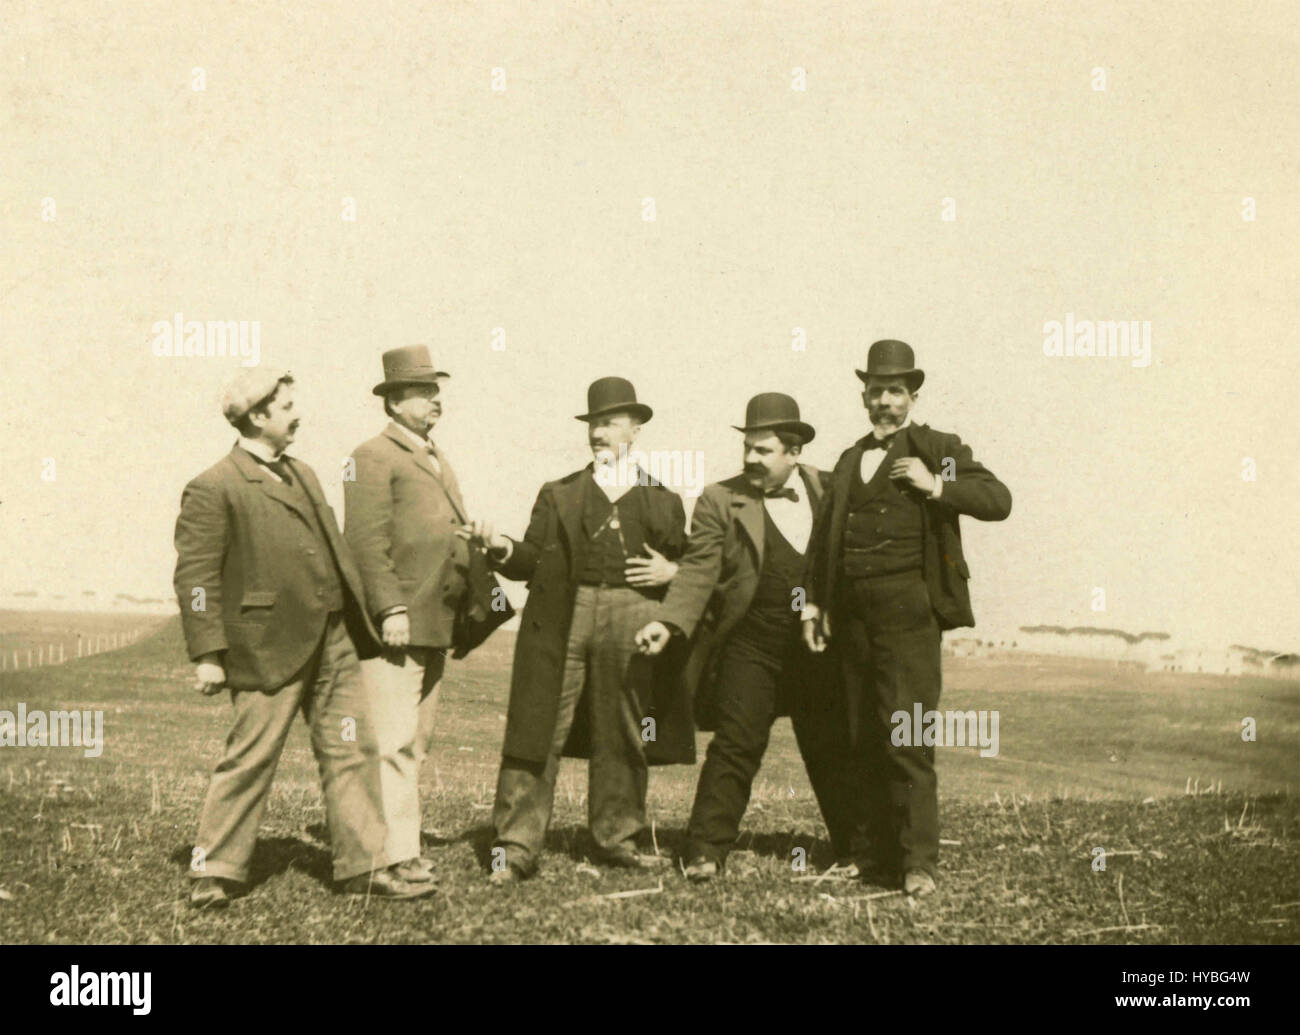 Five men in a field Stock Photo